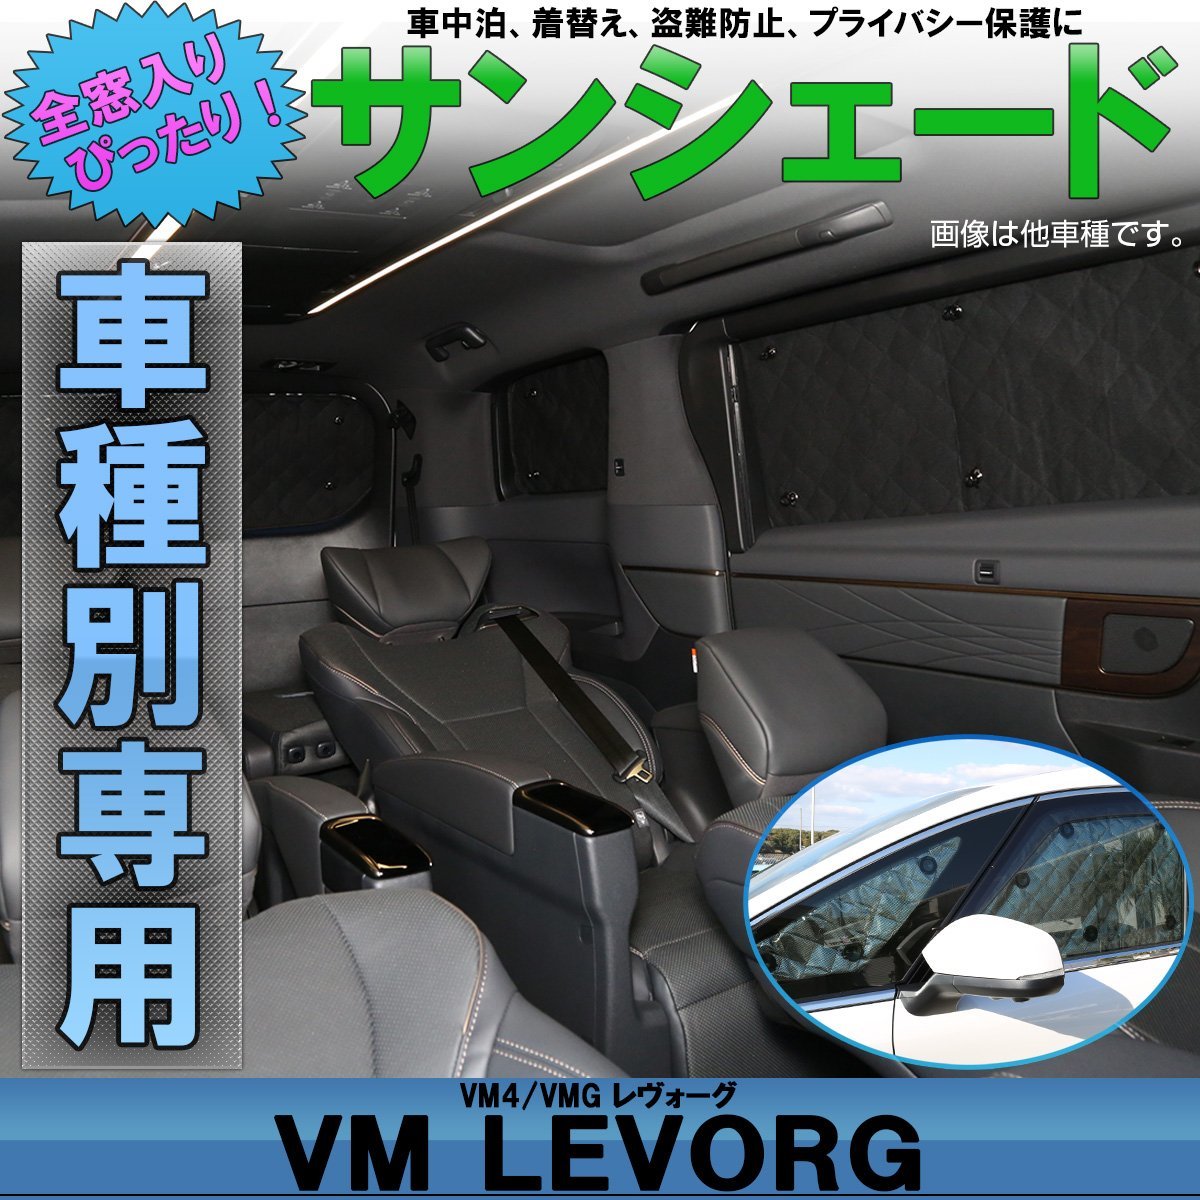 VM4 VMG レヴォーグ VM系 専用設計 サンシェード 全窓用セット 5層構造 ブラックメッシュ 車中泊 プライバシー保護に S-801